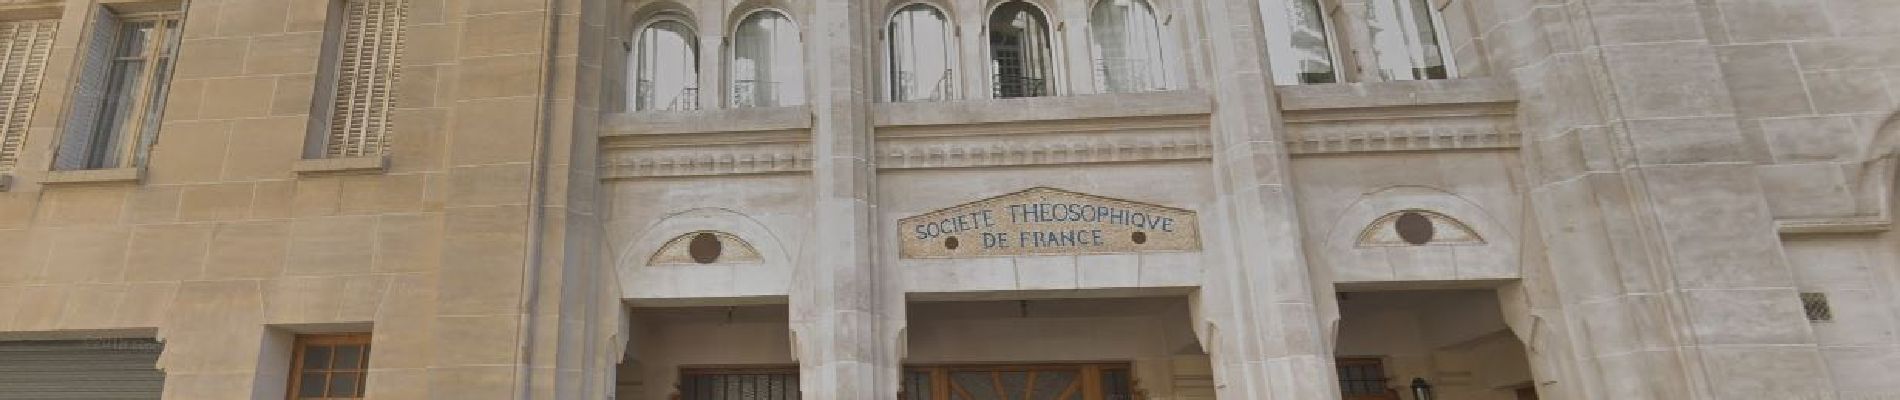 Point d'intérêt Paris - Immeuble de la societé Théosophique de France - Photo